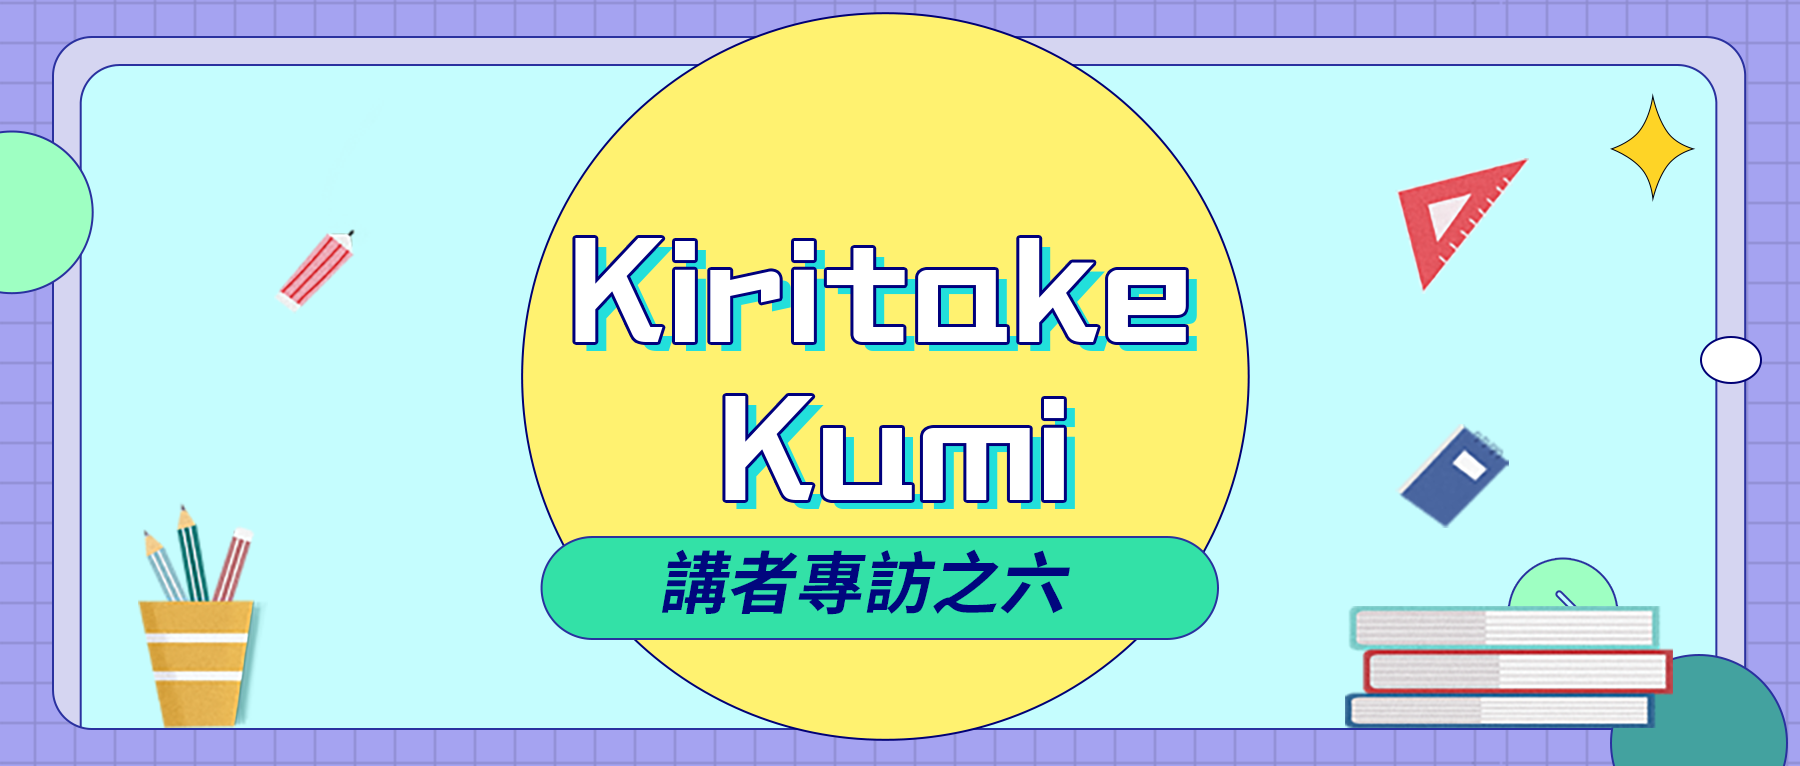 2020中文學生開源年會講者系列專訪之六：Kiritake Kumi